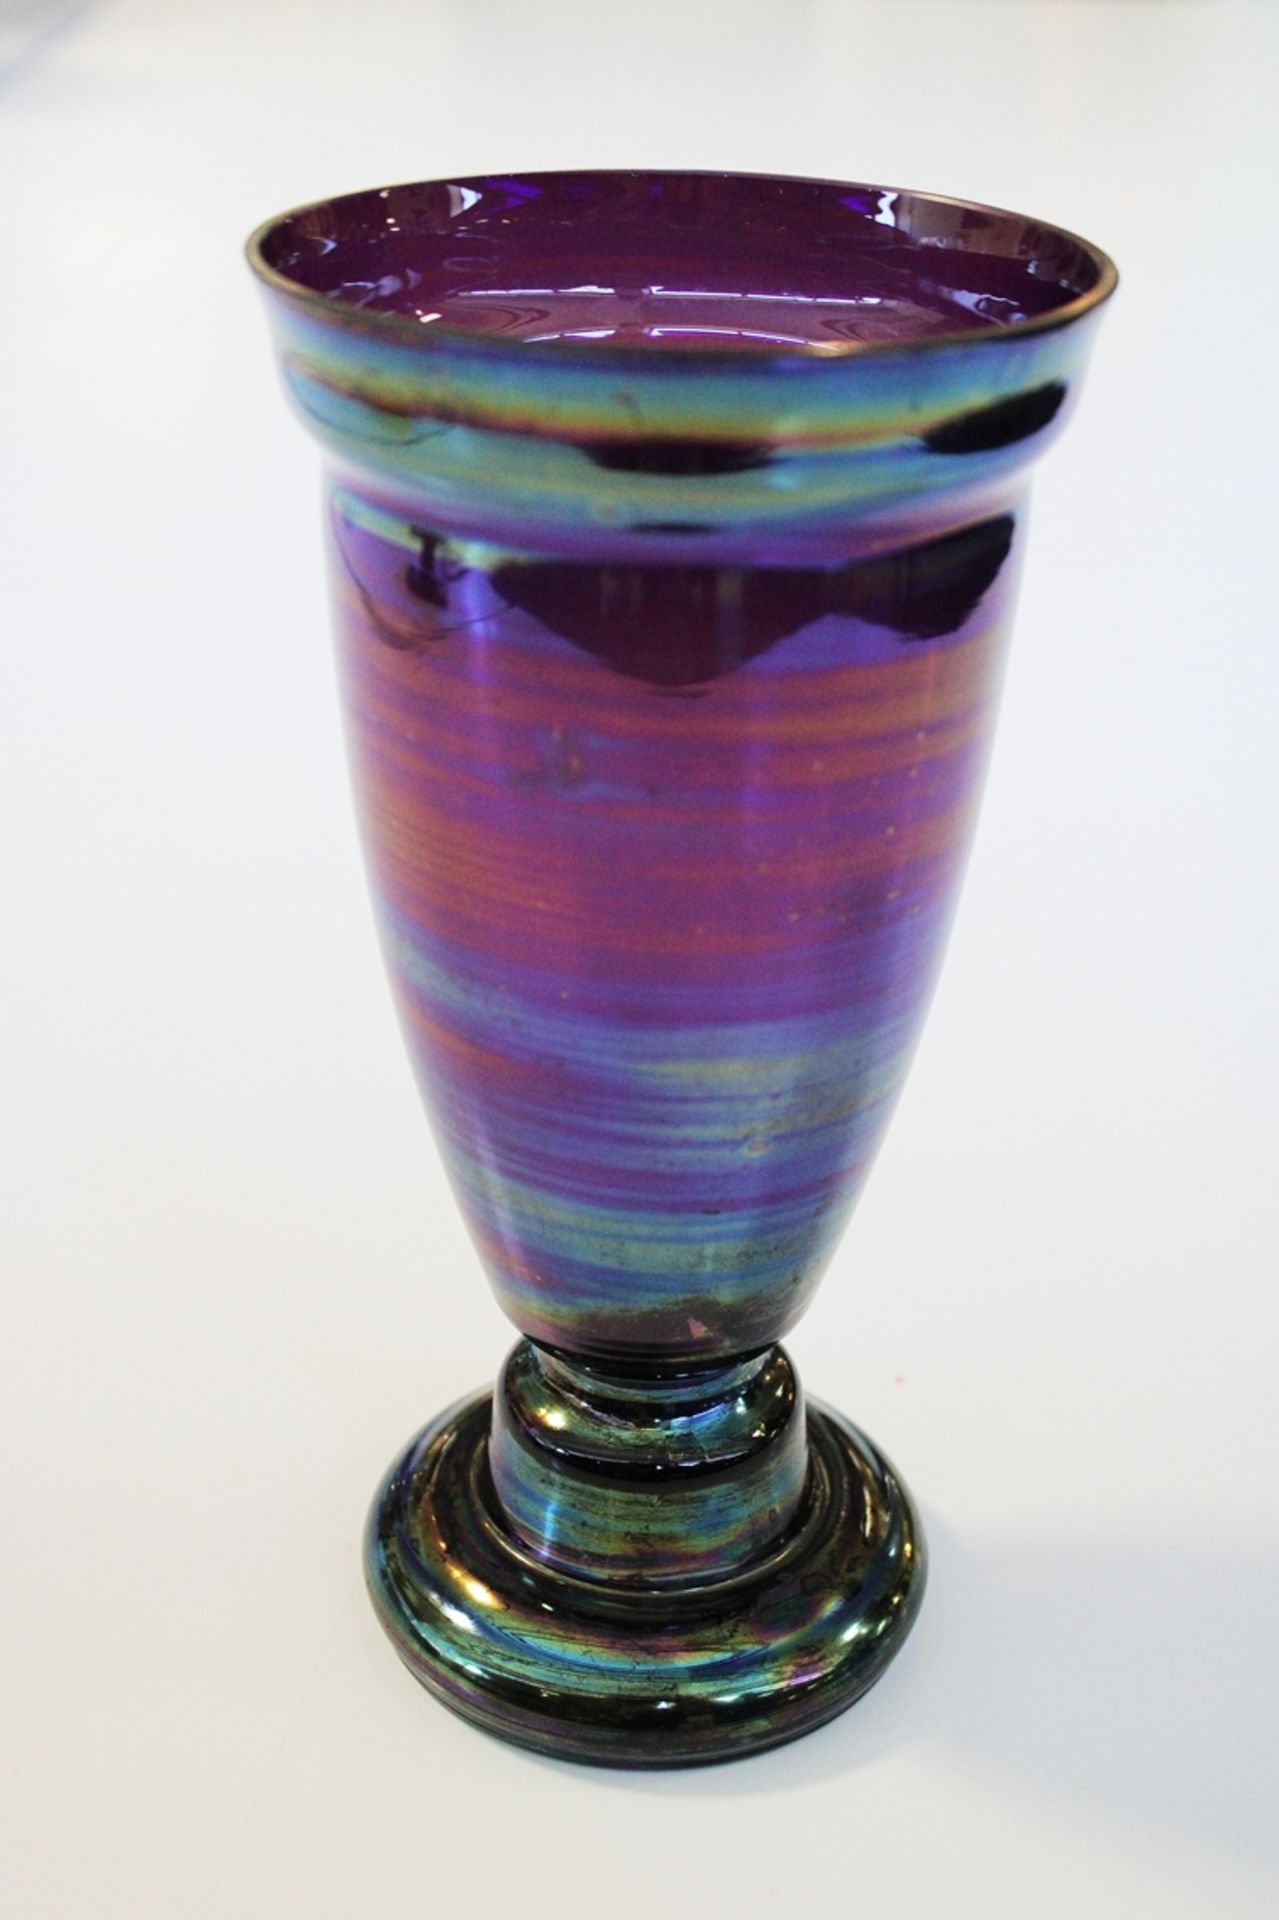 Fußvase, Jugendstil, 1920er Jahre, Glas, violett und grün irisierend, 21.4 cm hoch, Mündung beschli - Bild 2 aus 2